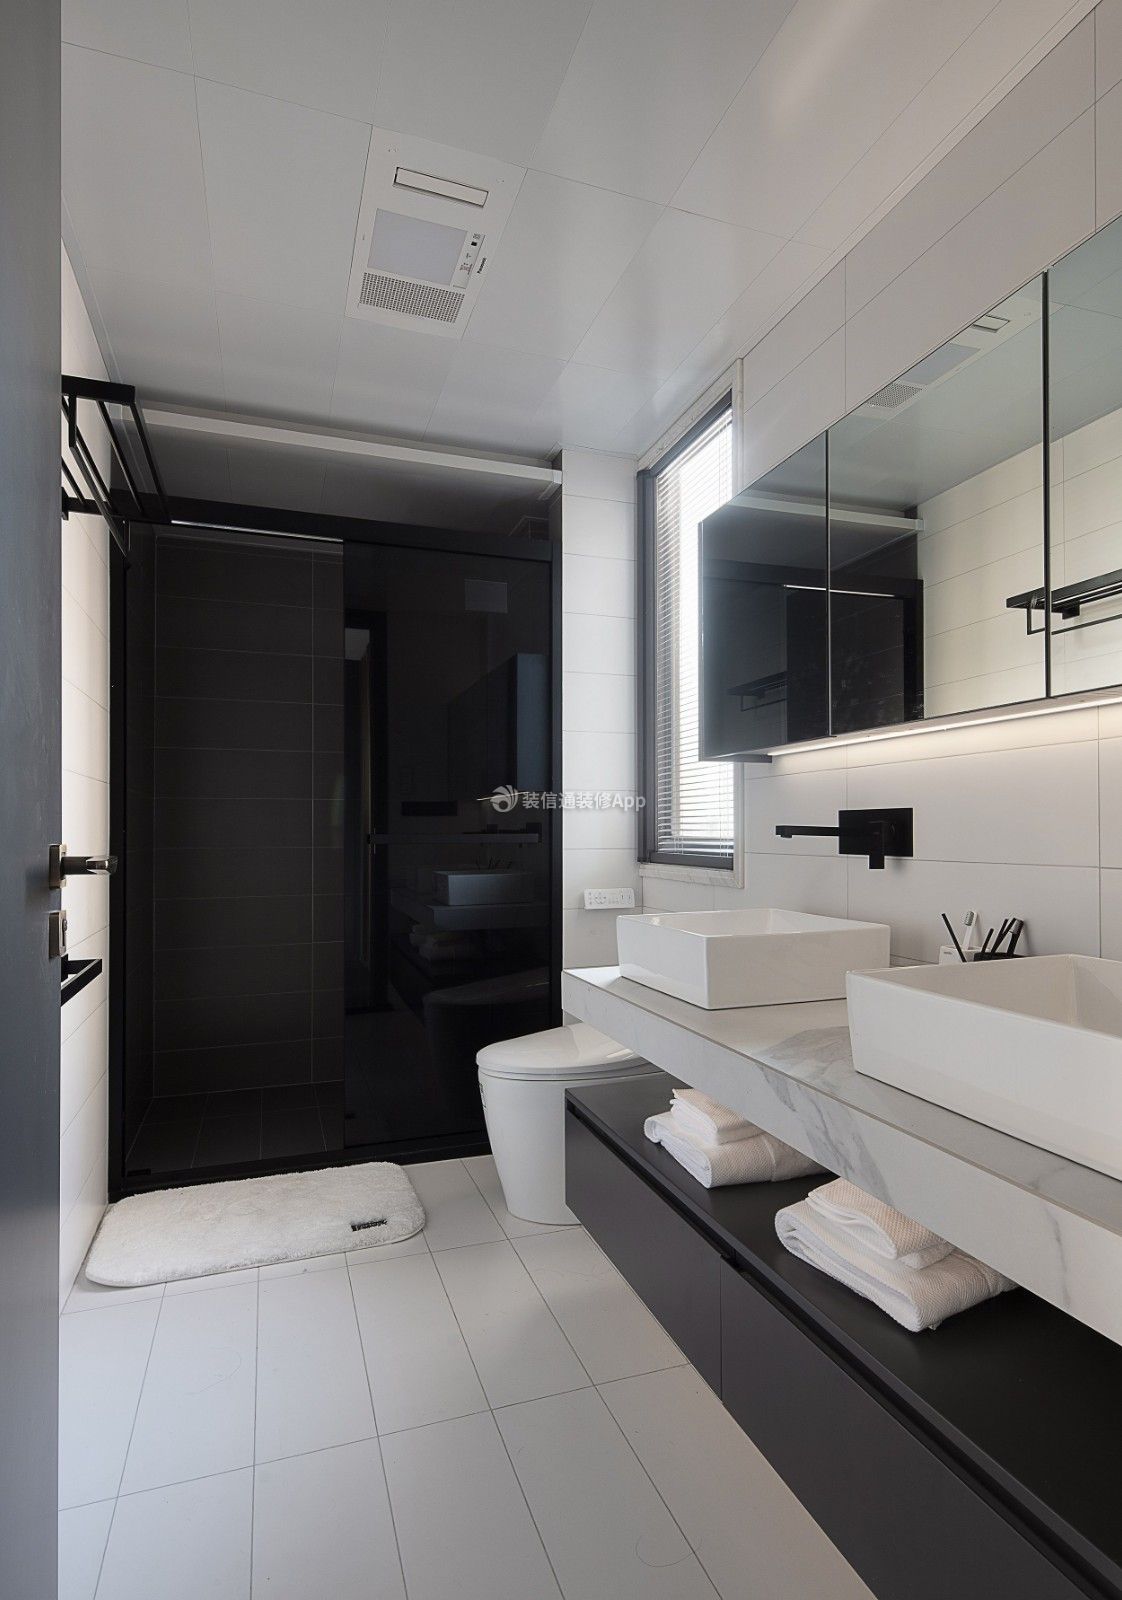 120平方房子家装卫生间洗手台设计图: